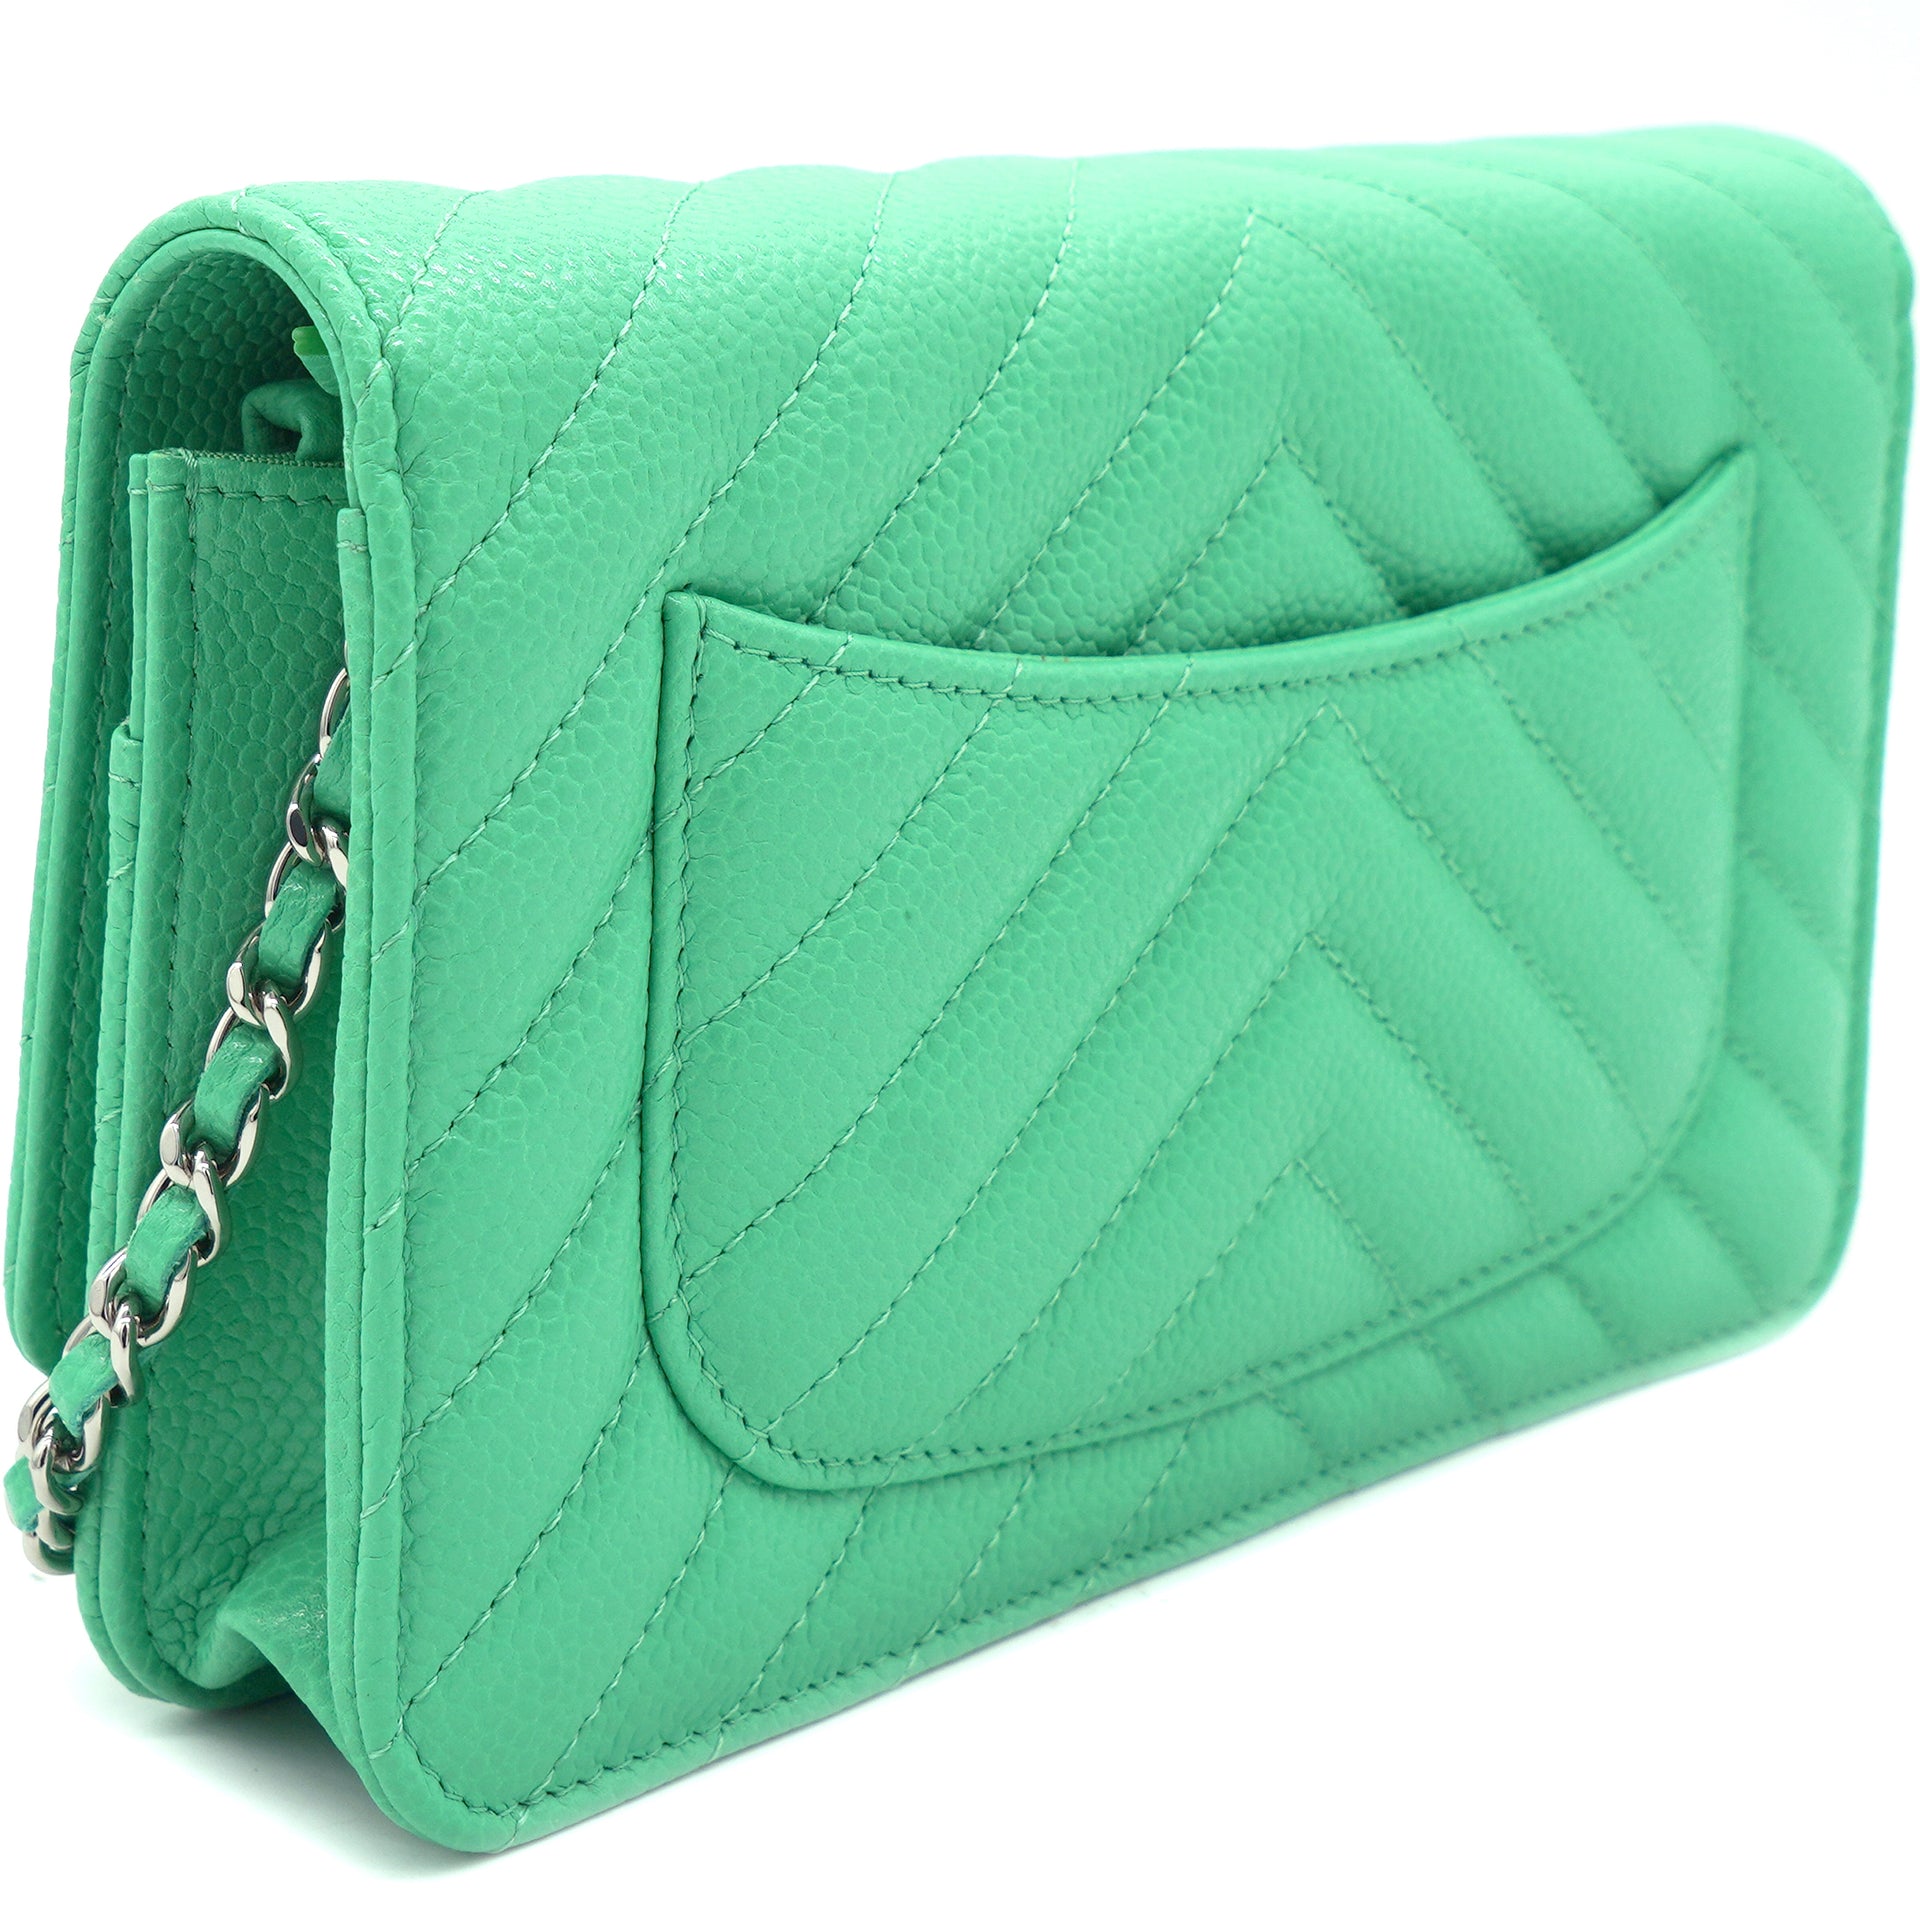 green chanel flap wallet